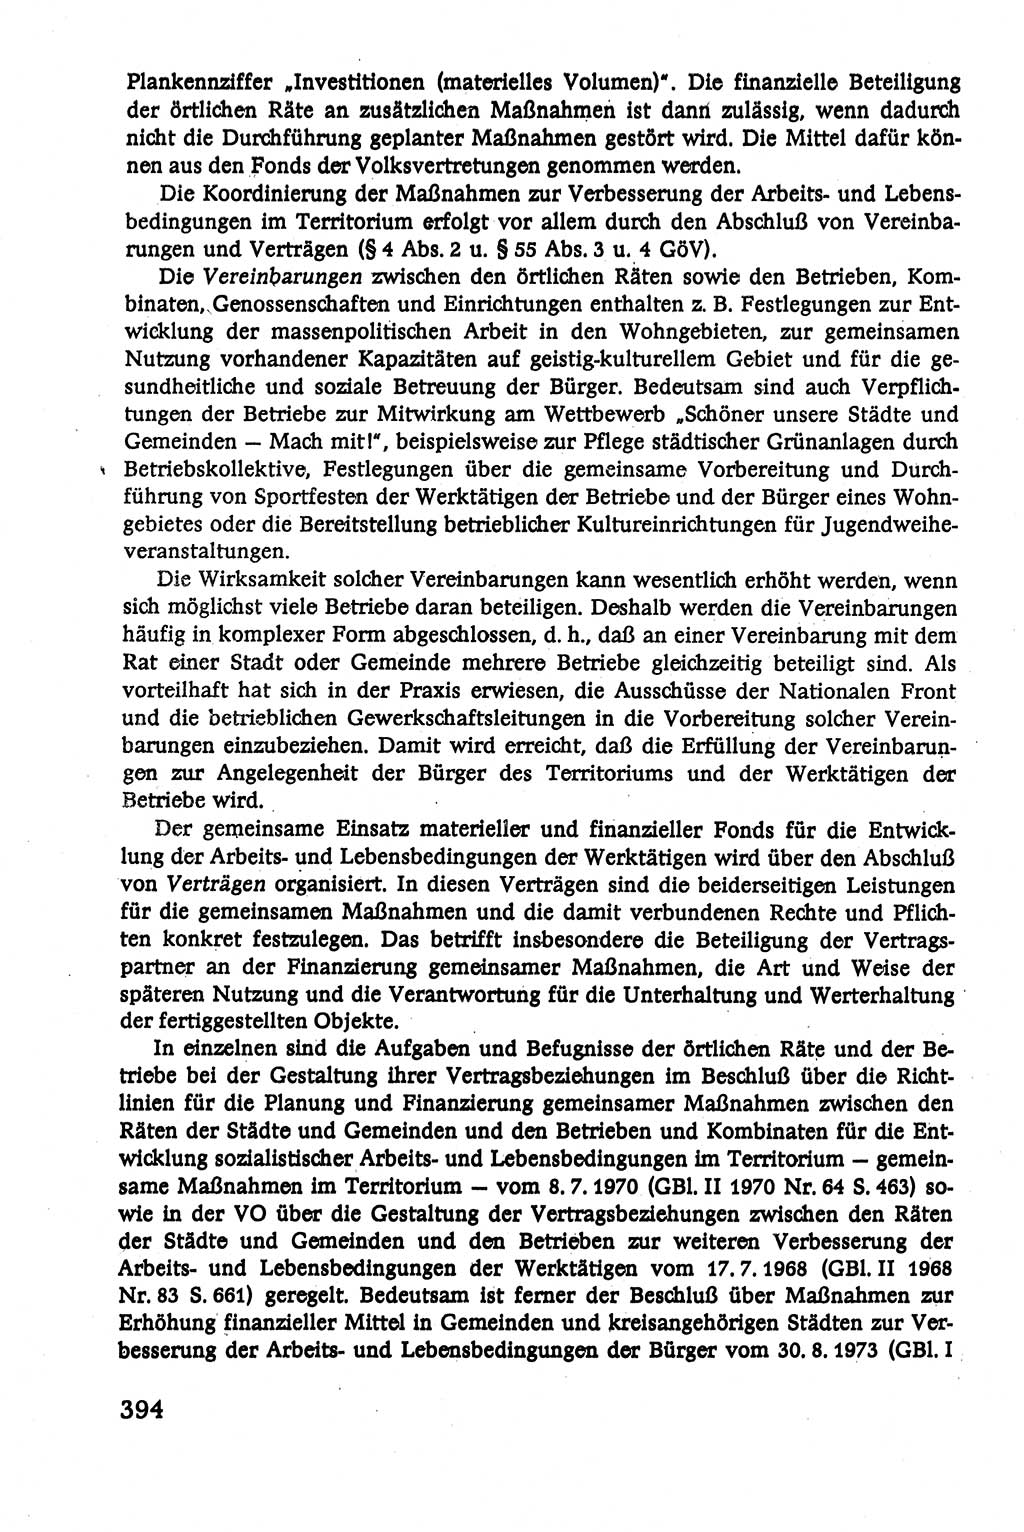 Verwaltungsrecht [Deutsche Demokratische Republik (DDR)], Lehrbuch 1979, Seite 394 (Verw.-R. DDR Lb. 1979, S. 394)